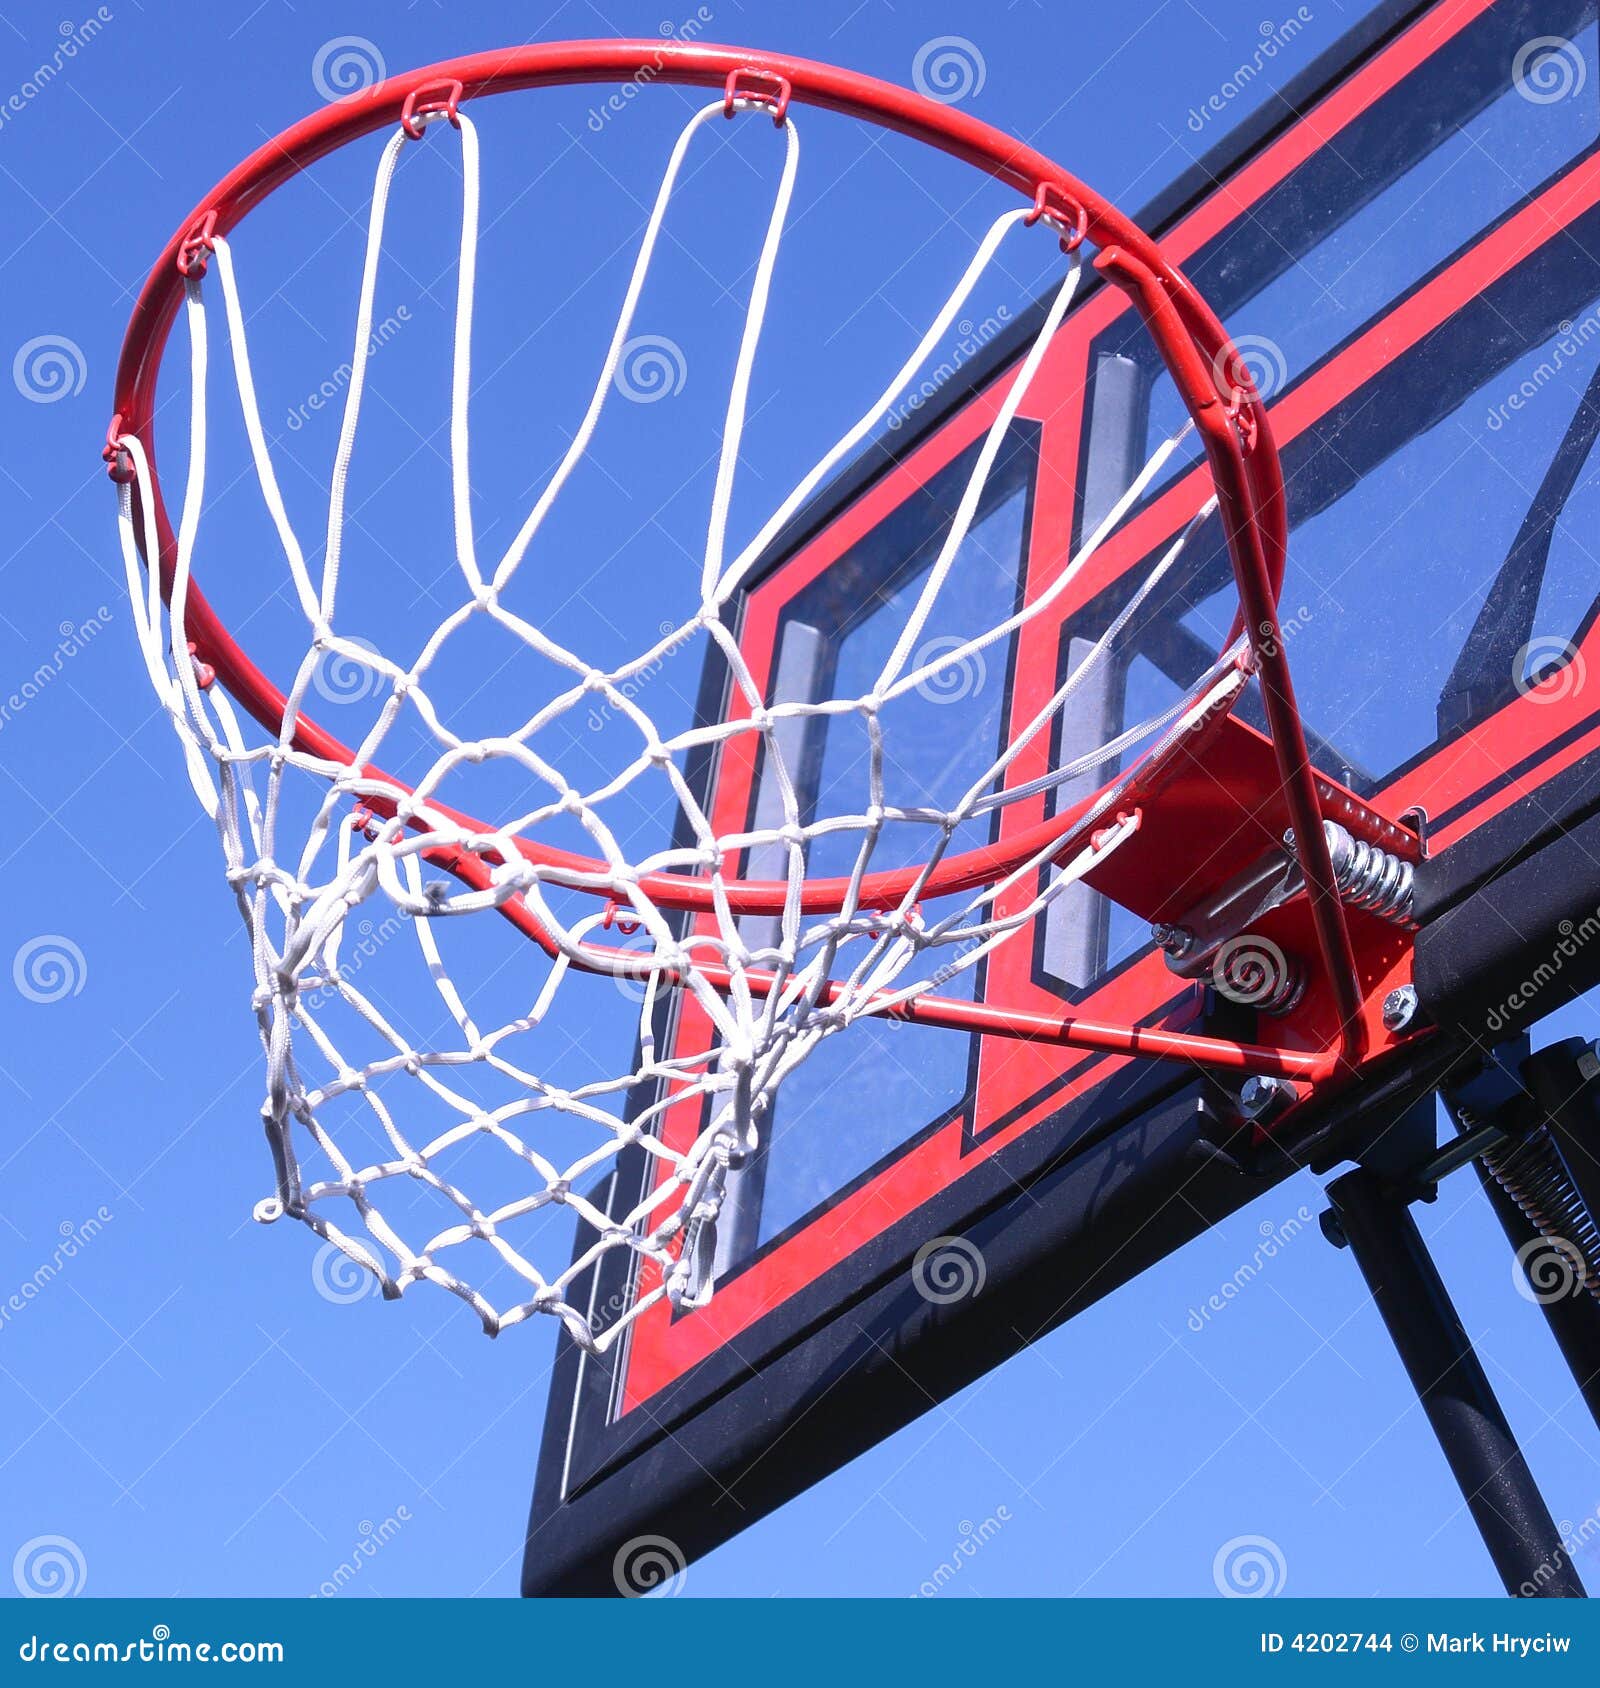 Outdoor Basketball Hoop Net Stock Photo - Image of outdoor, game: 4202744